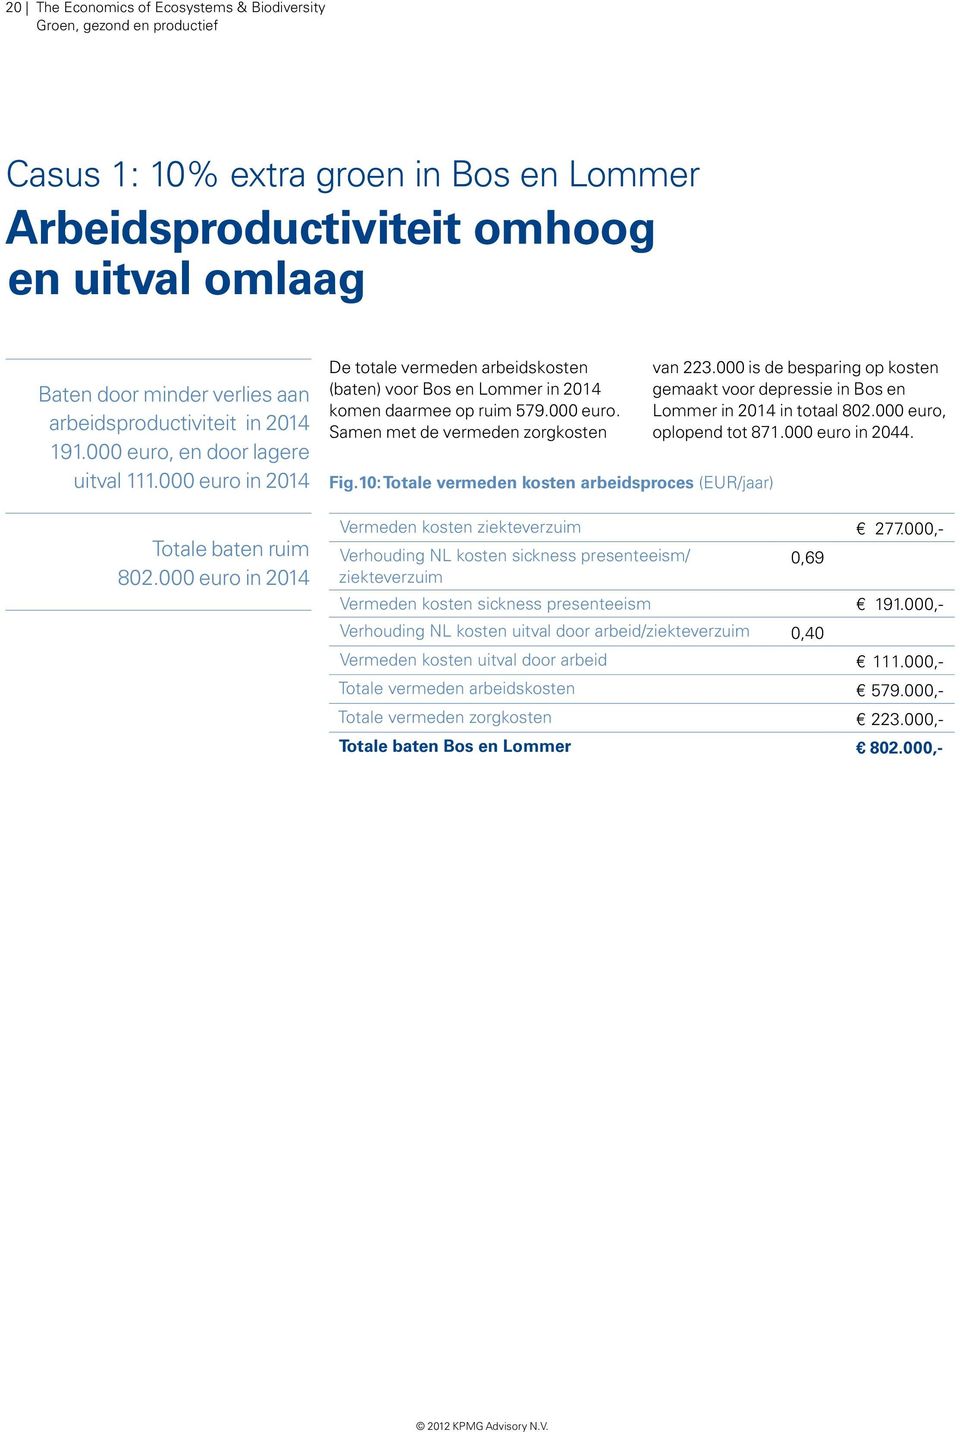 10: Totale vermeden kosten arbeidsproces (EUR/jaar) van 223.000 is de besparing op kosten gemaakt voor depressie in Bos en Lommer in 2014 in totaal 802.000 euro, oplopend tot 871.000 euro in 2044.